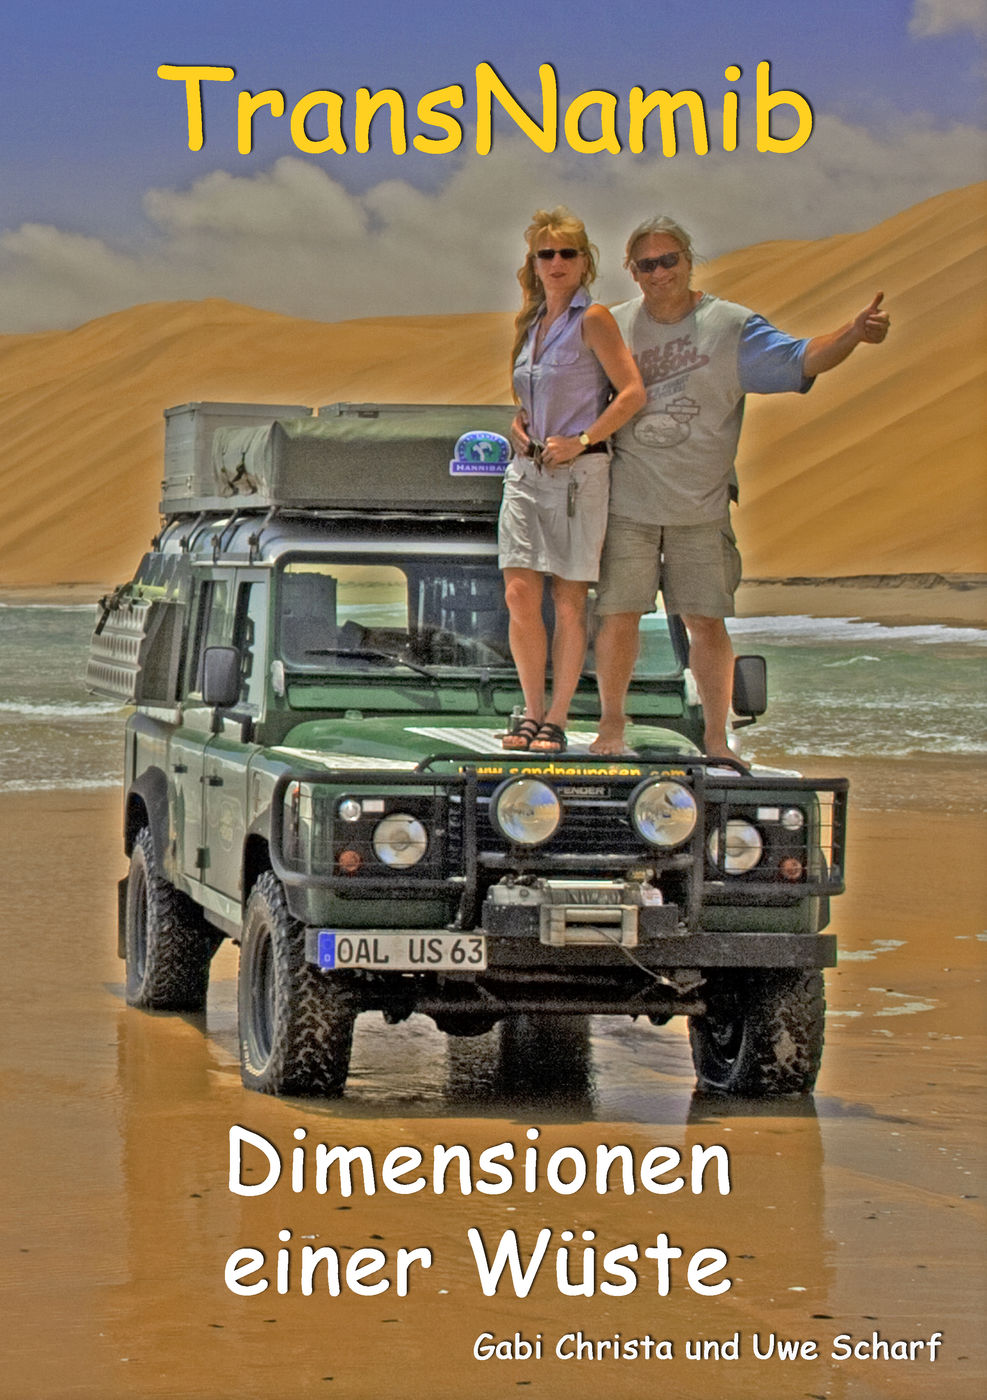 TransNamib: Dimensionen einer Wüste
TransNamib: Dimensionen ein